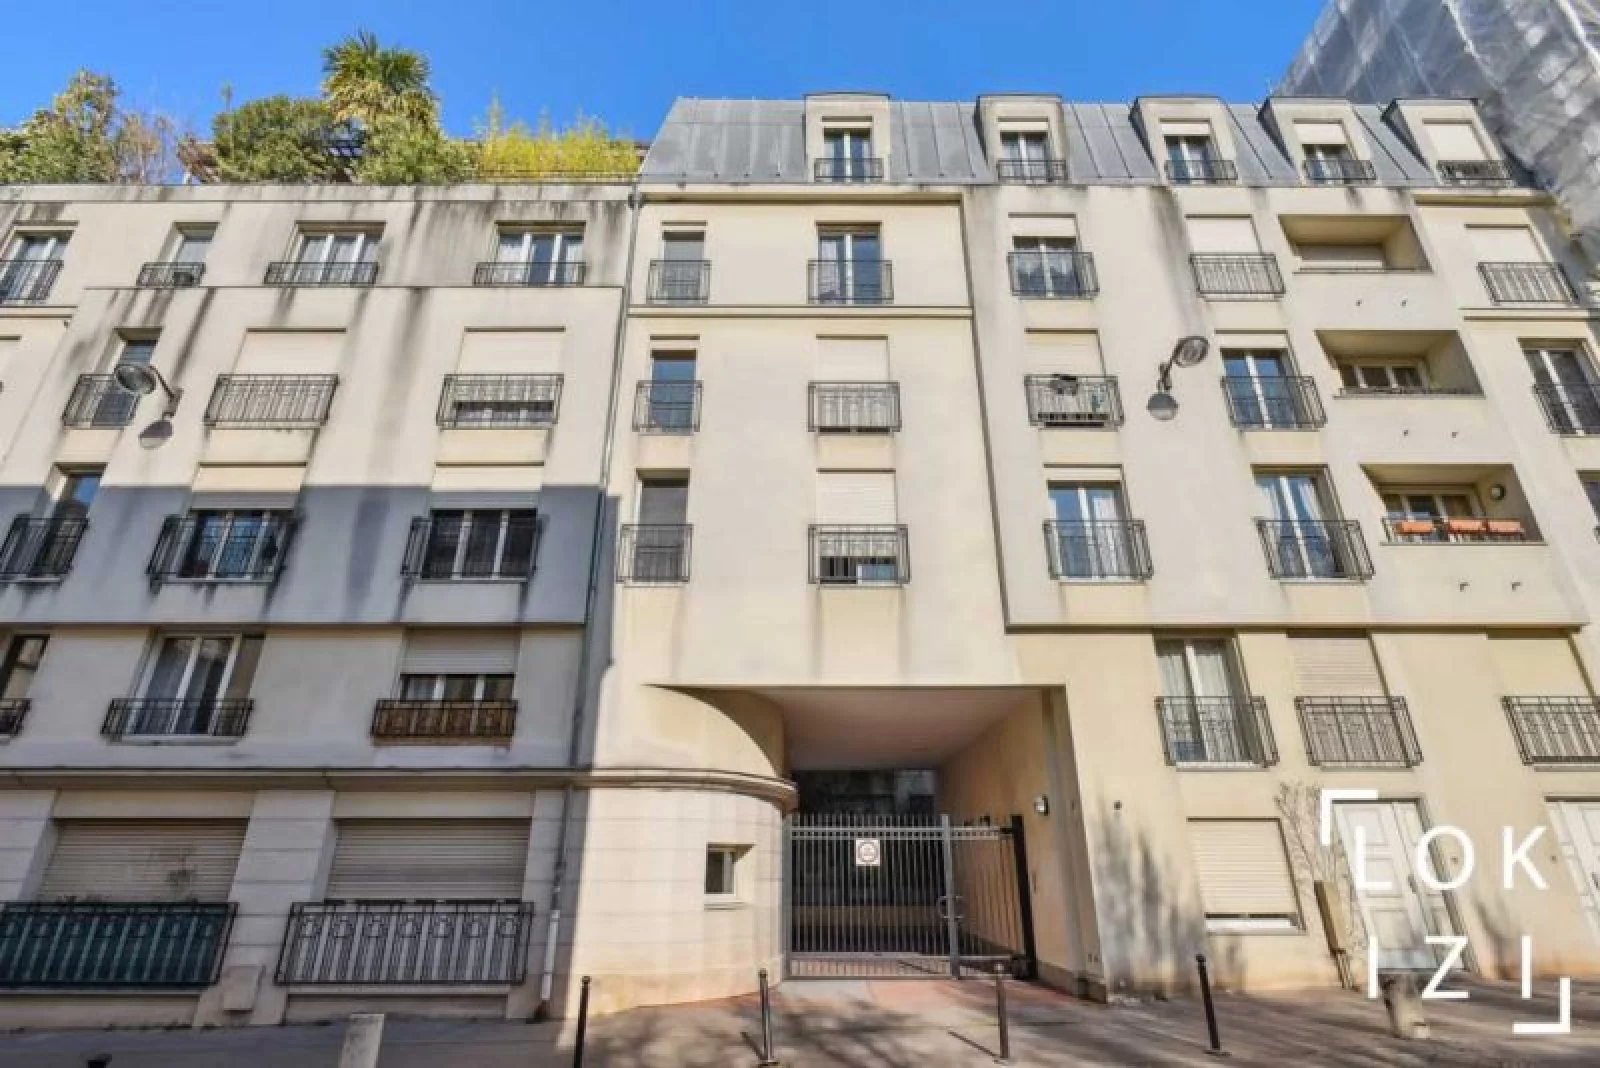 Location appartement meublé 2 pièces 47m² (Paris 11)